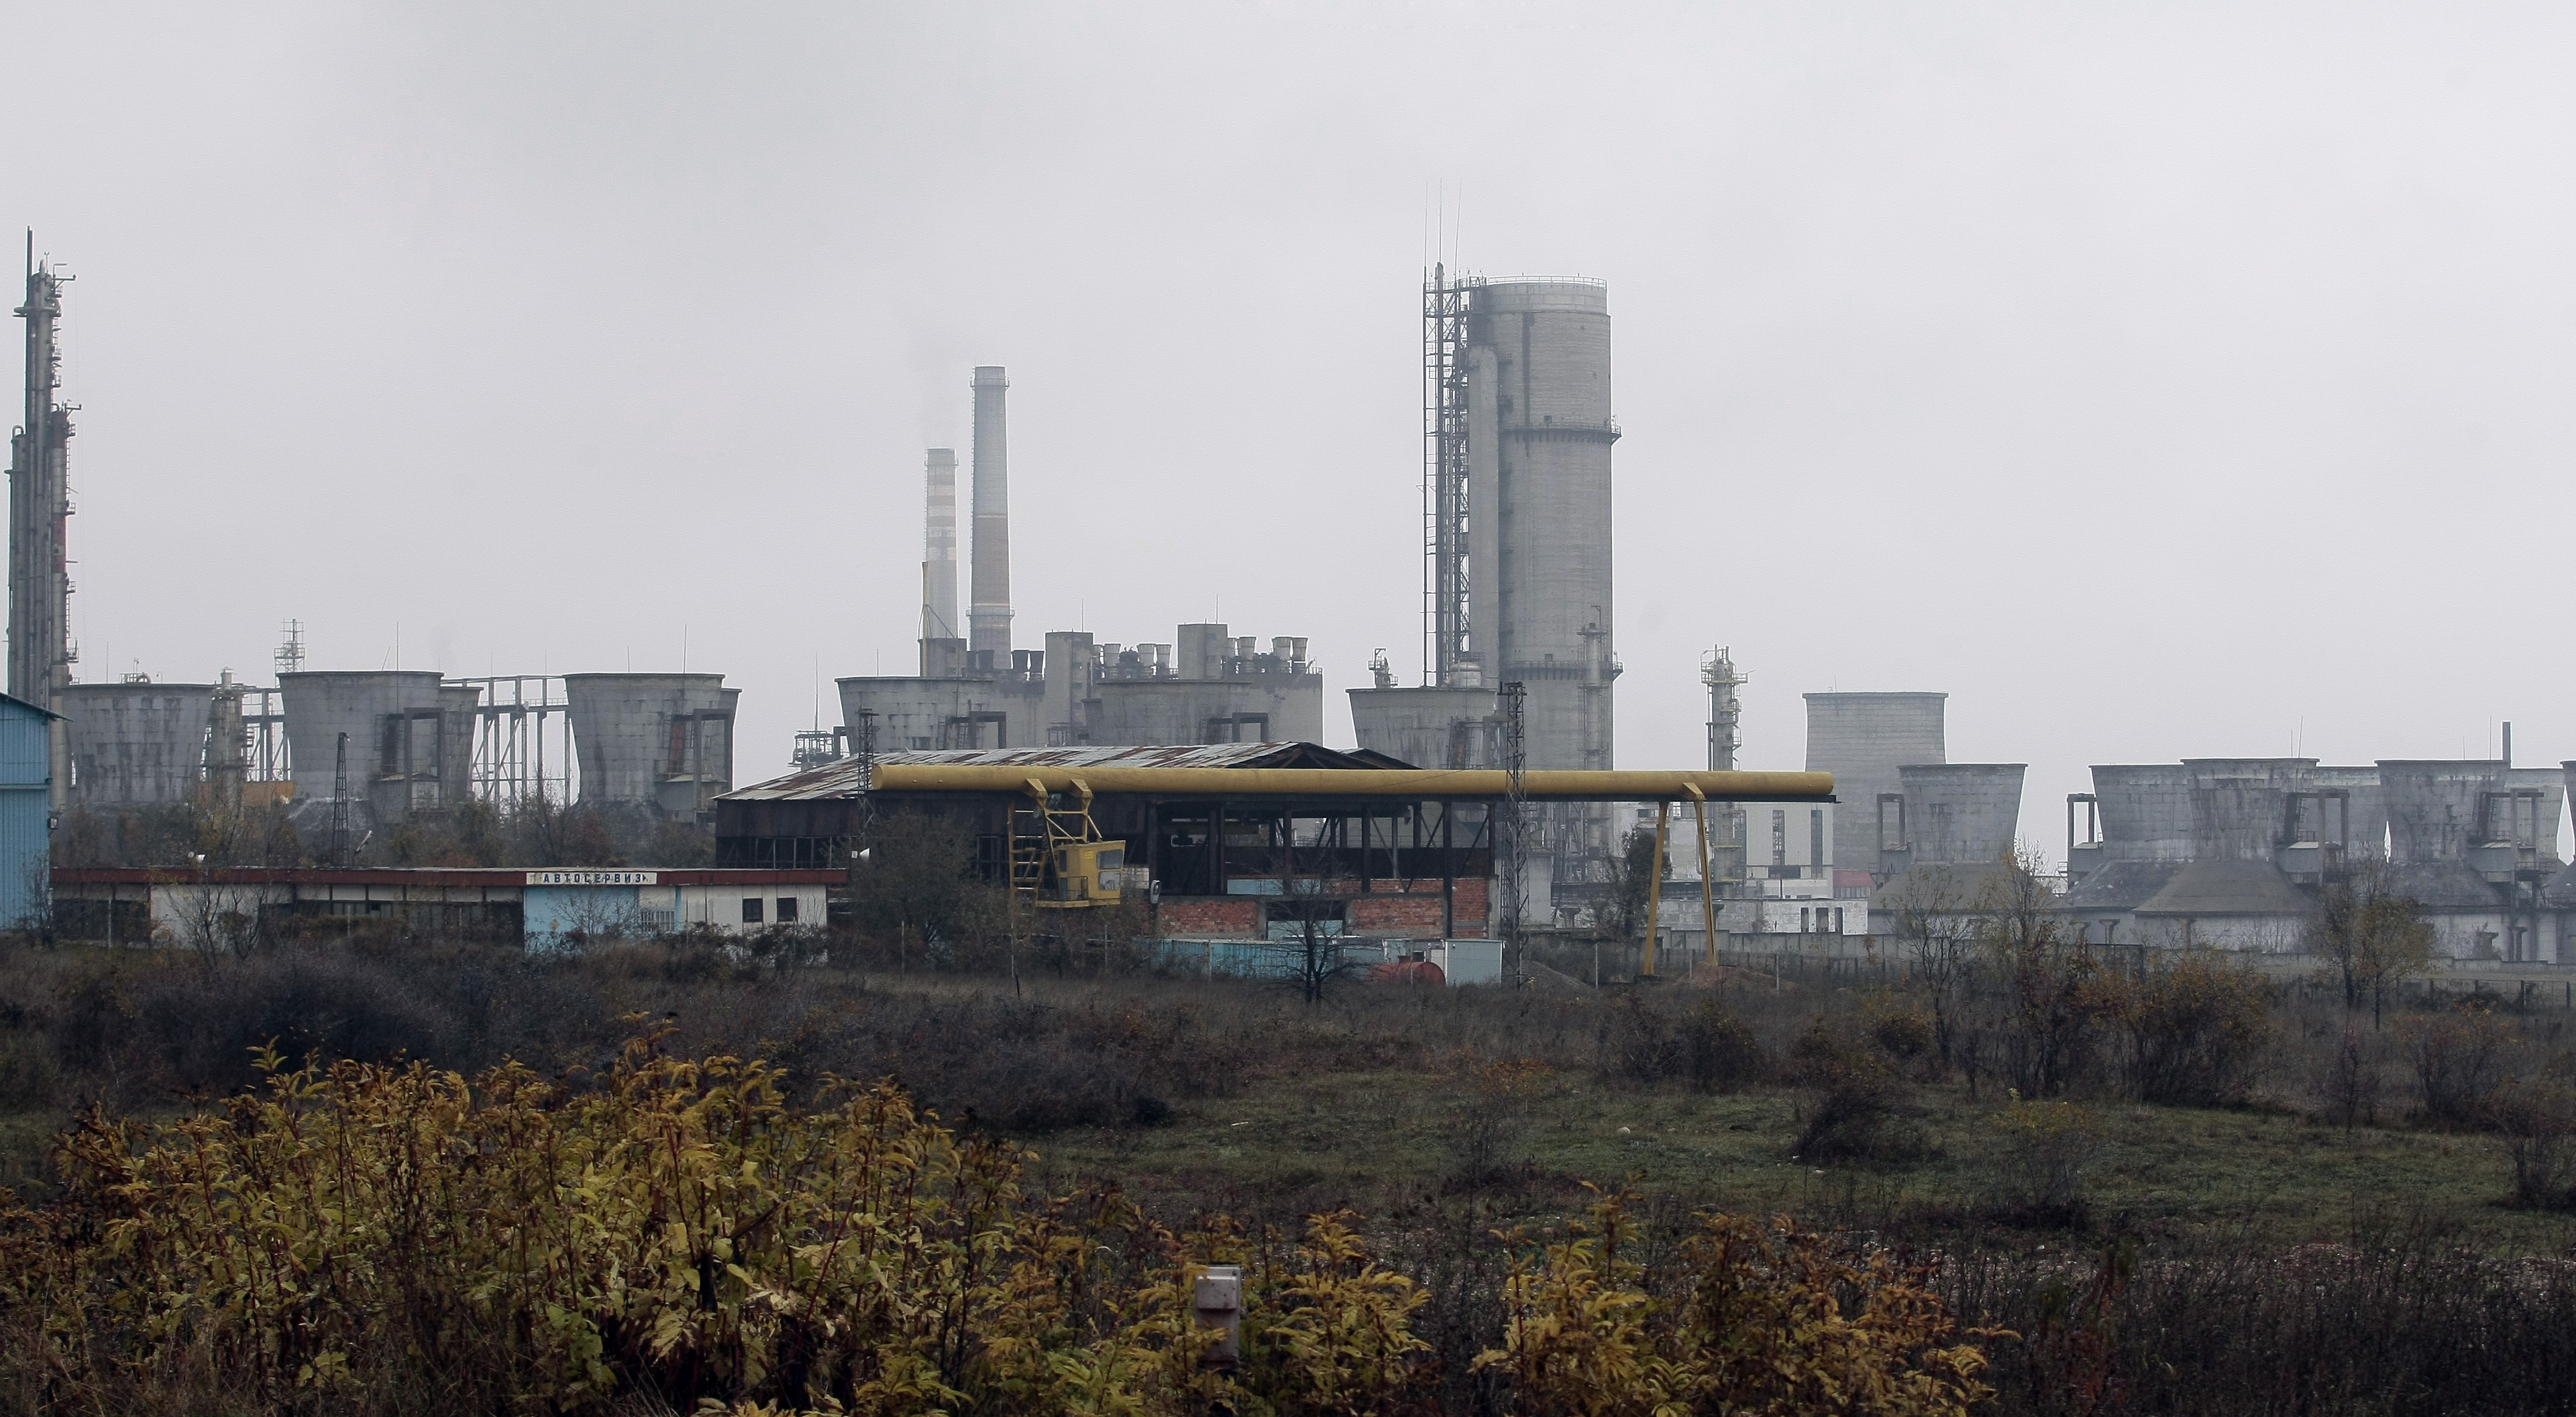 На територията на бившия завод Химко във Враца се съхраняват